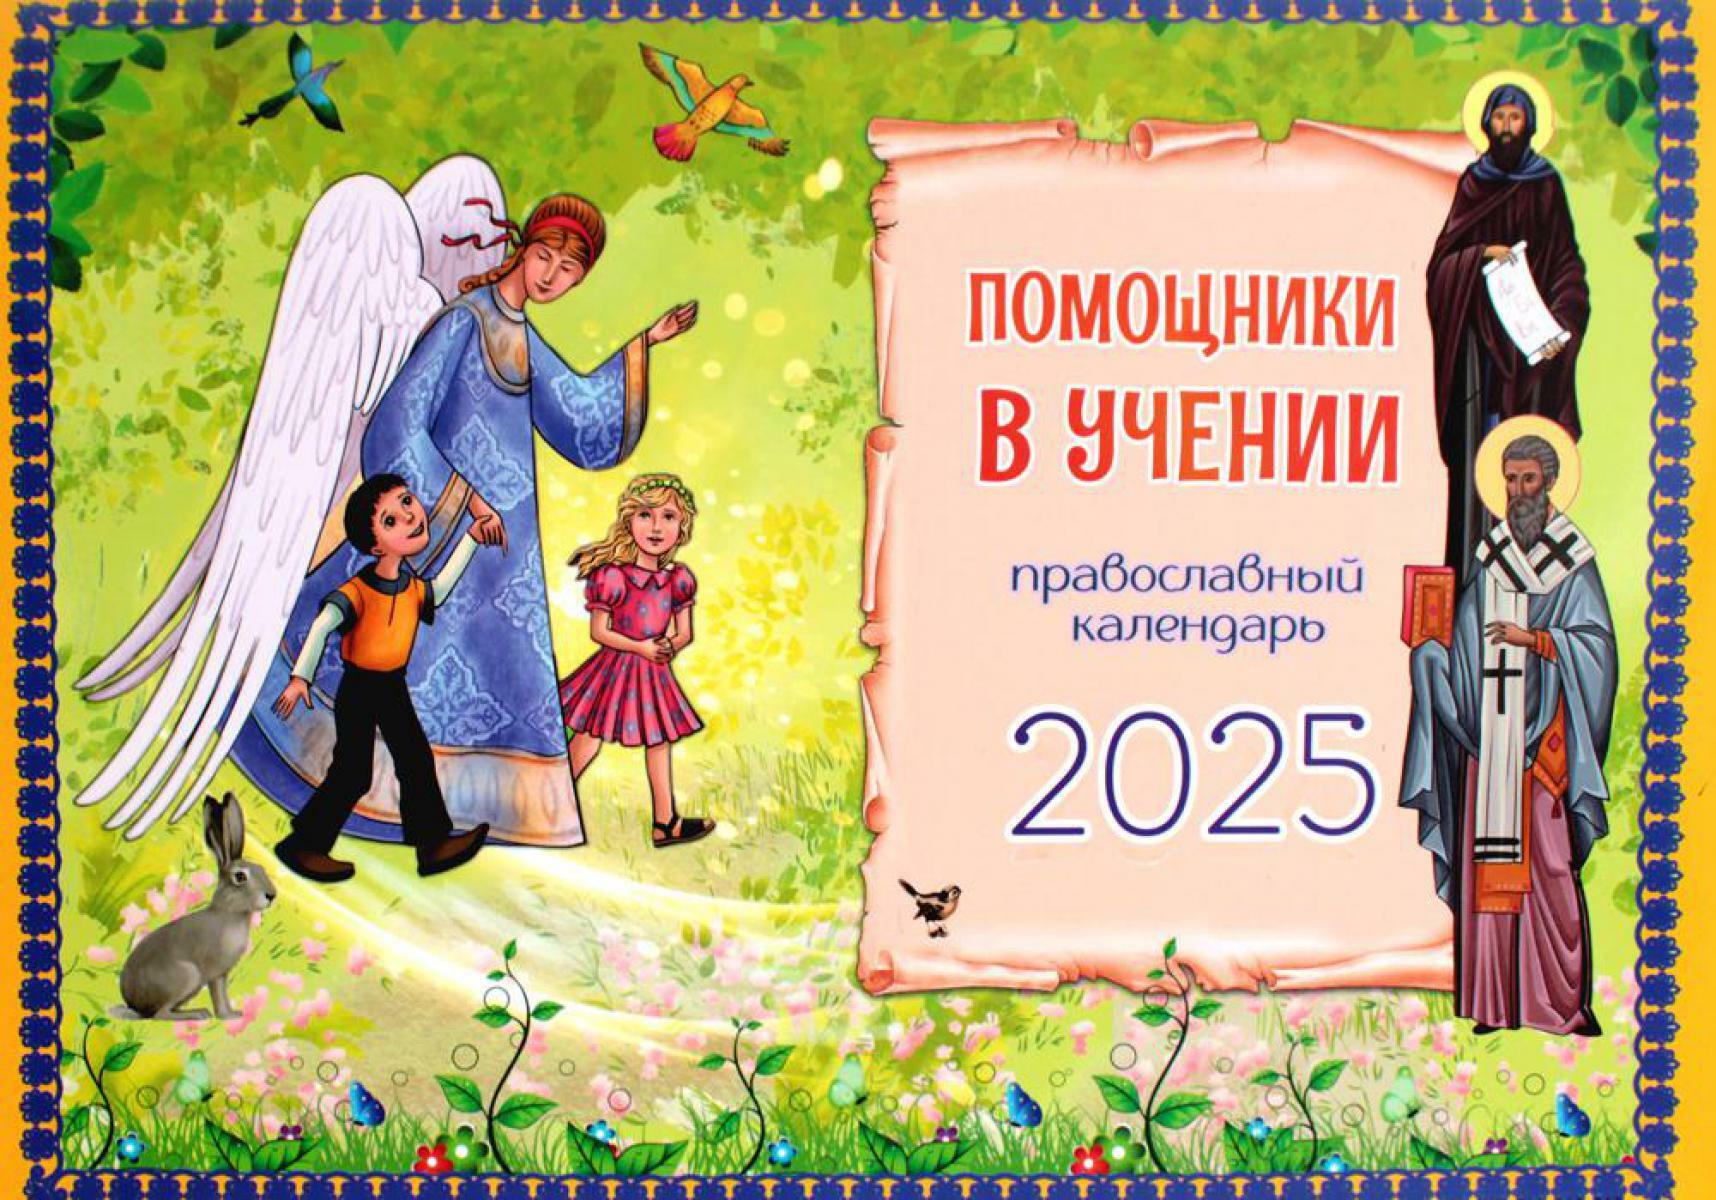 Помощники в учении: православный календарь 2025. (перекидной)